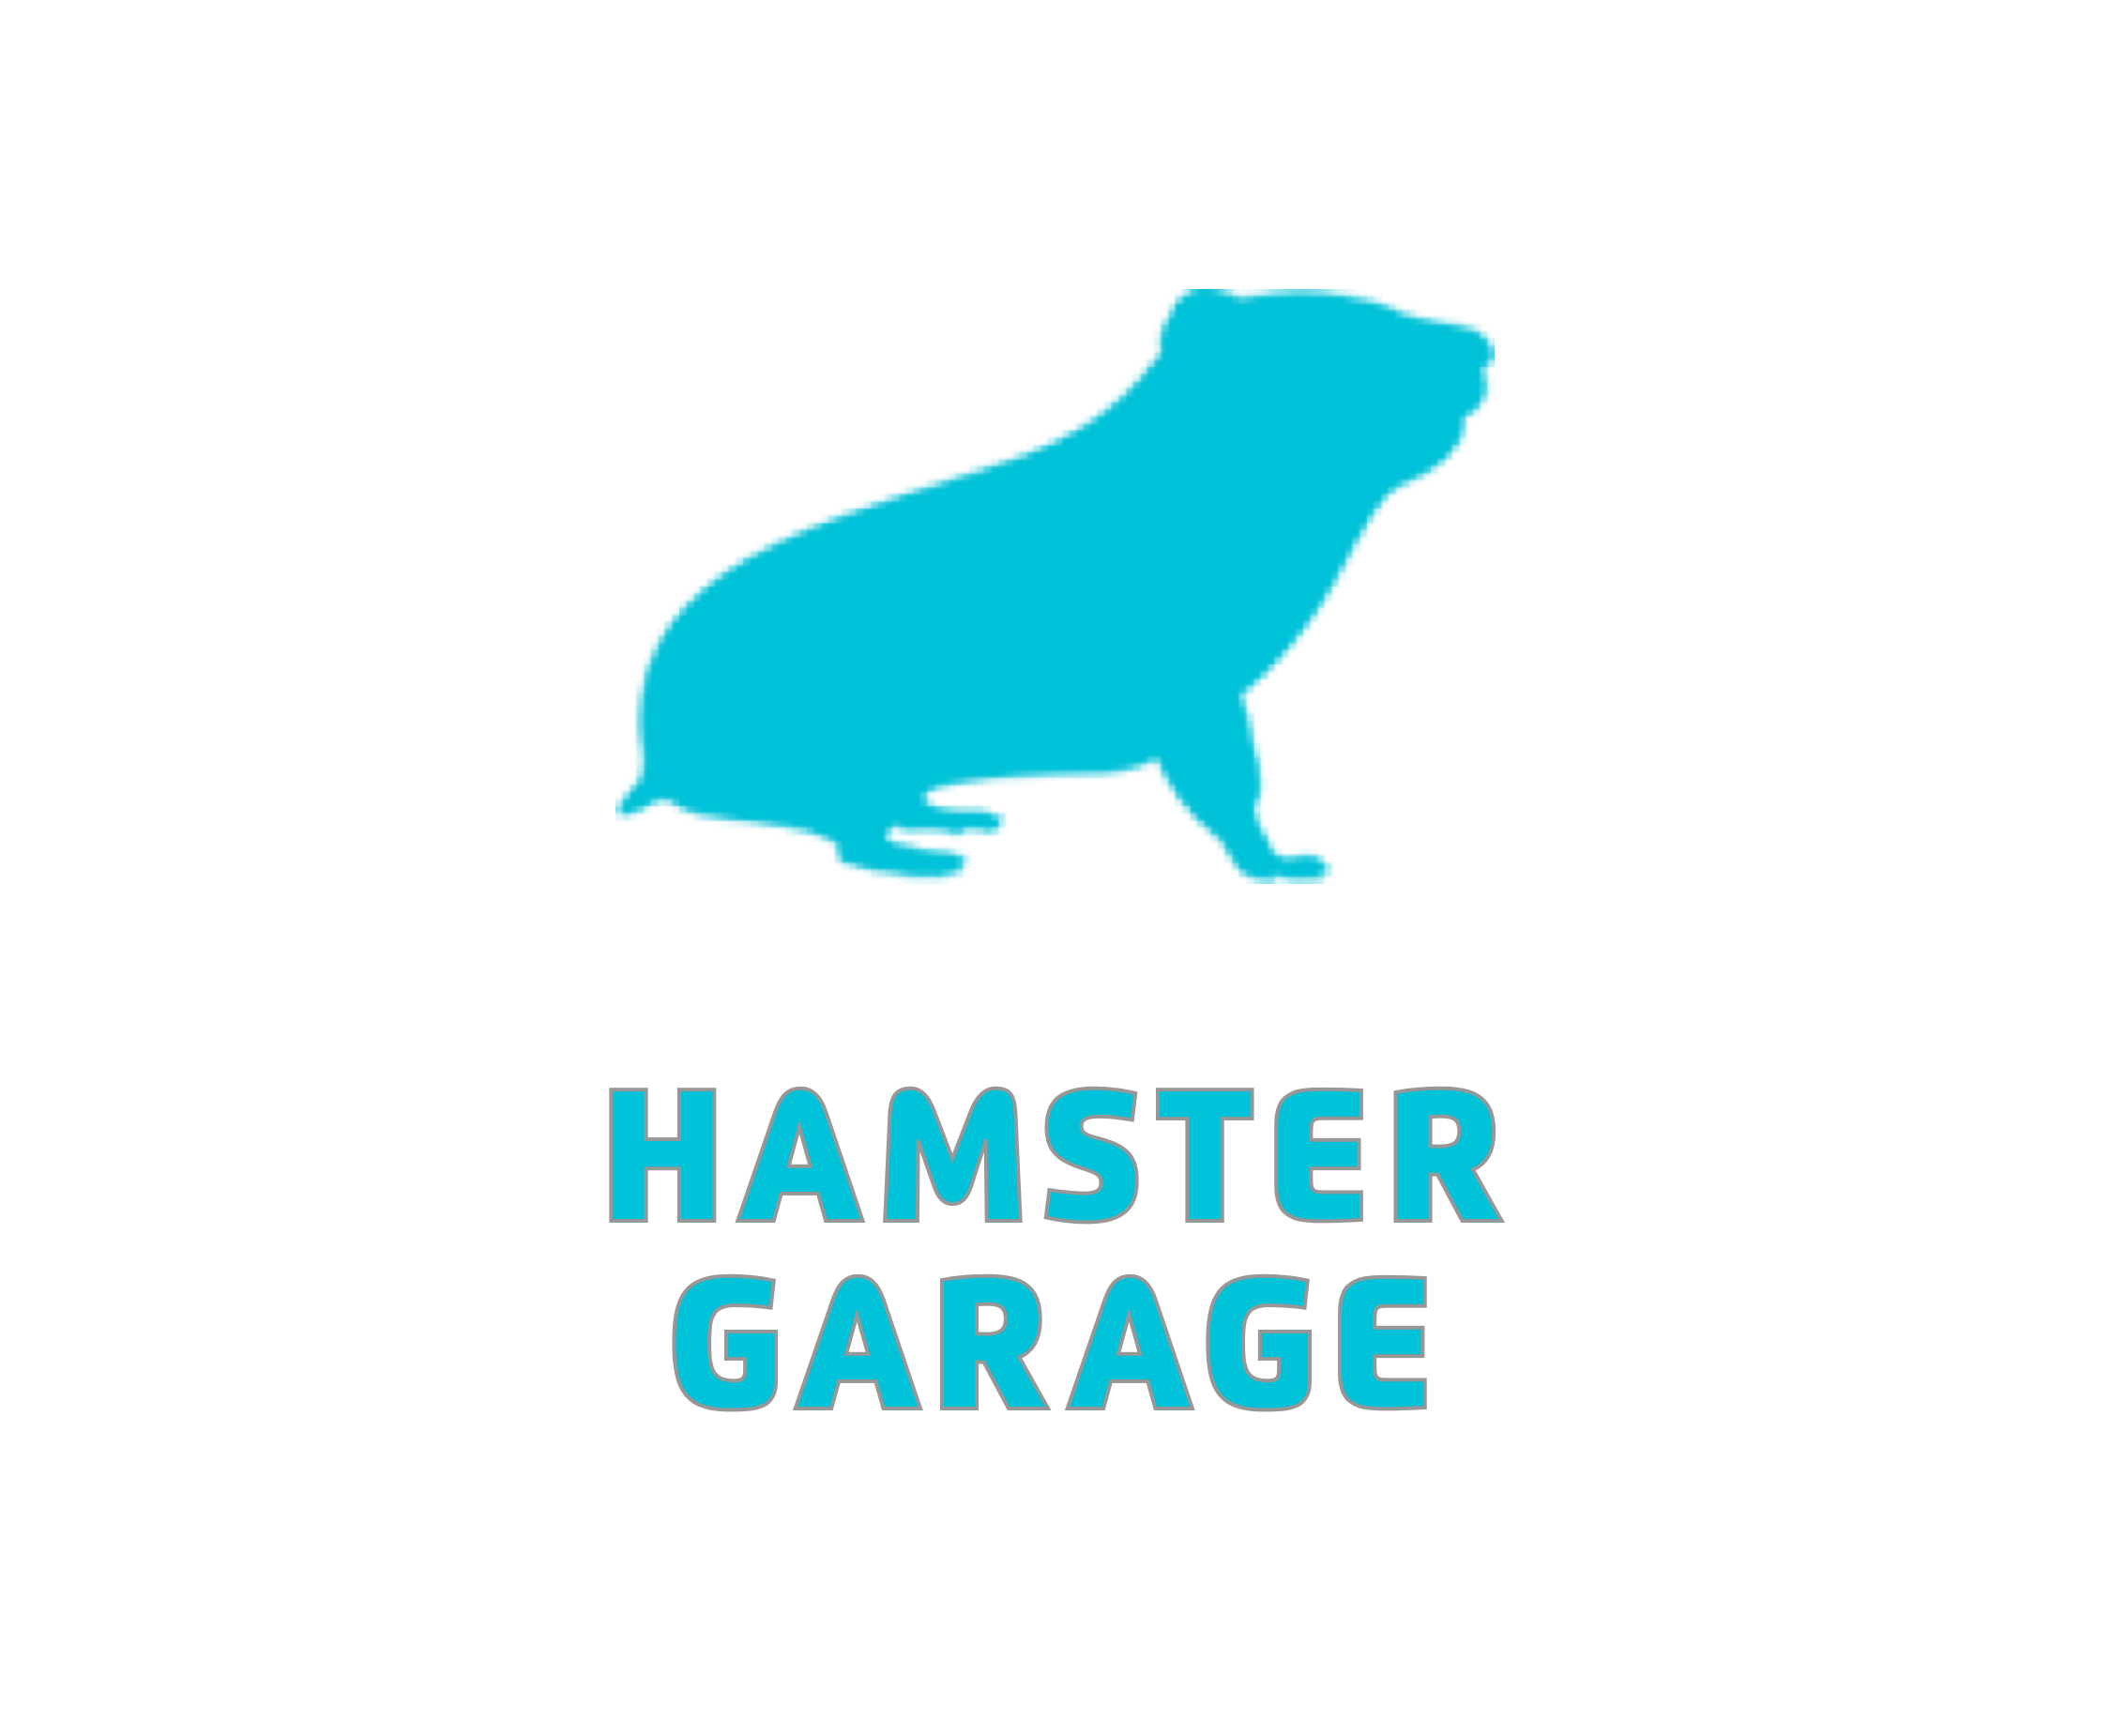 Hamster Garage Affiliate Marketing Agency Logo - Transparent